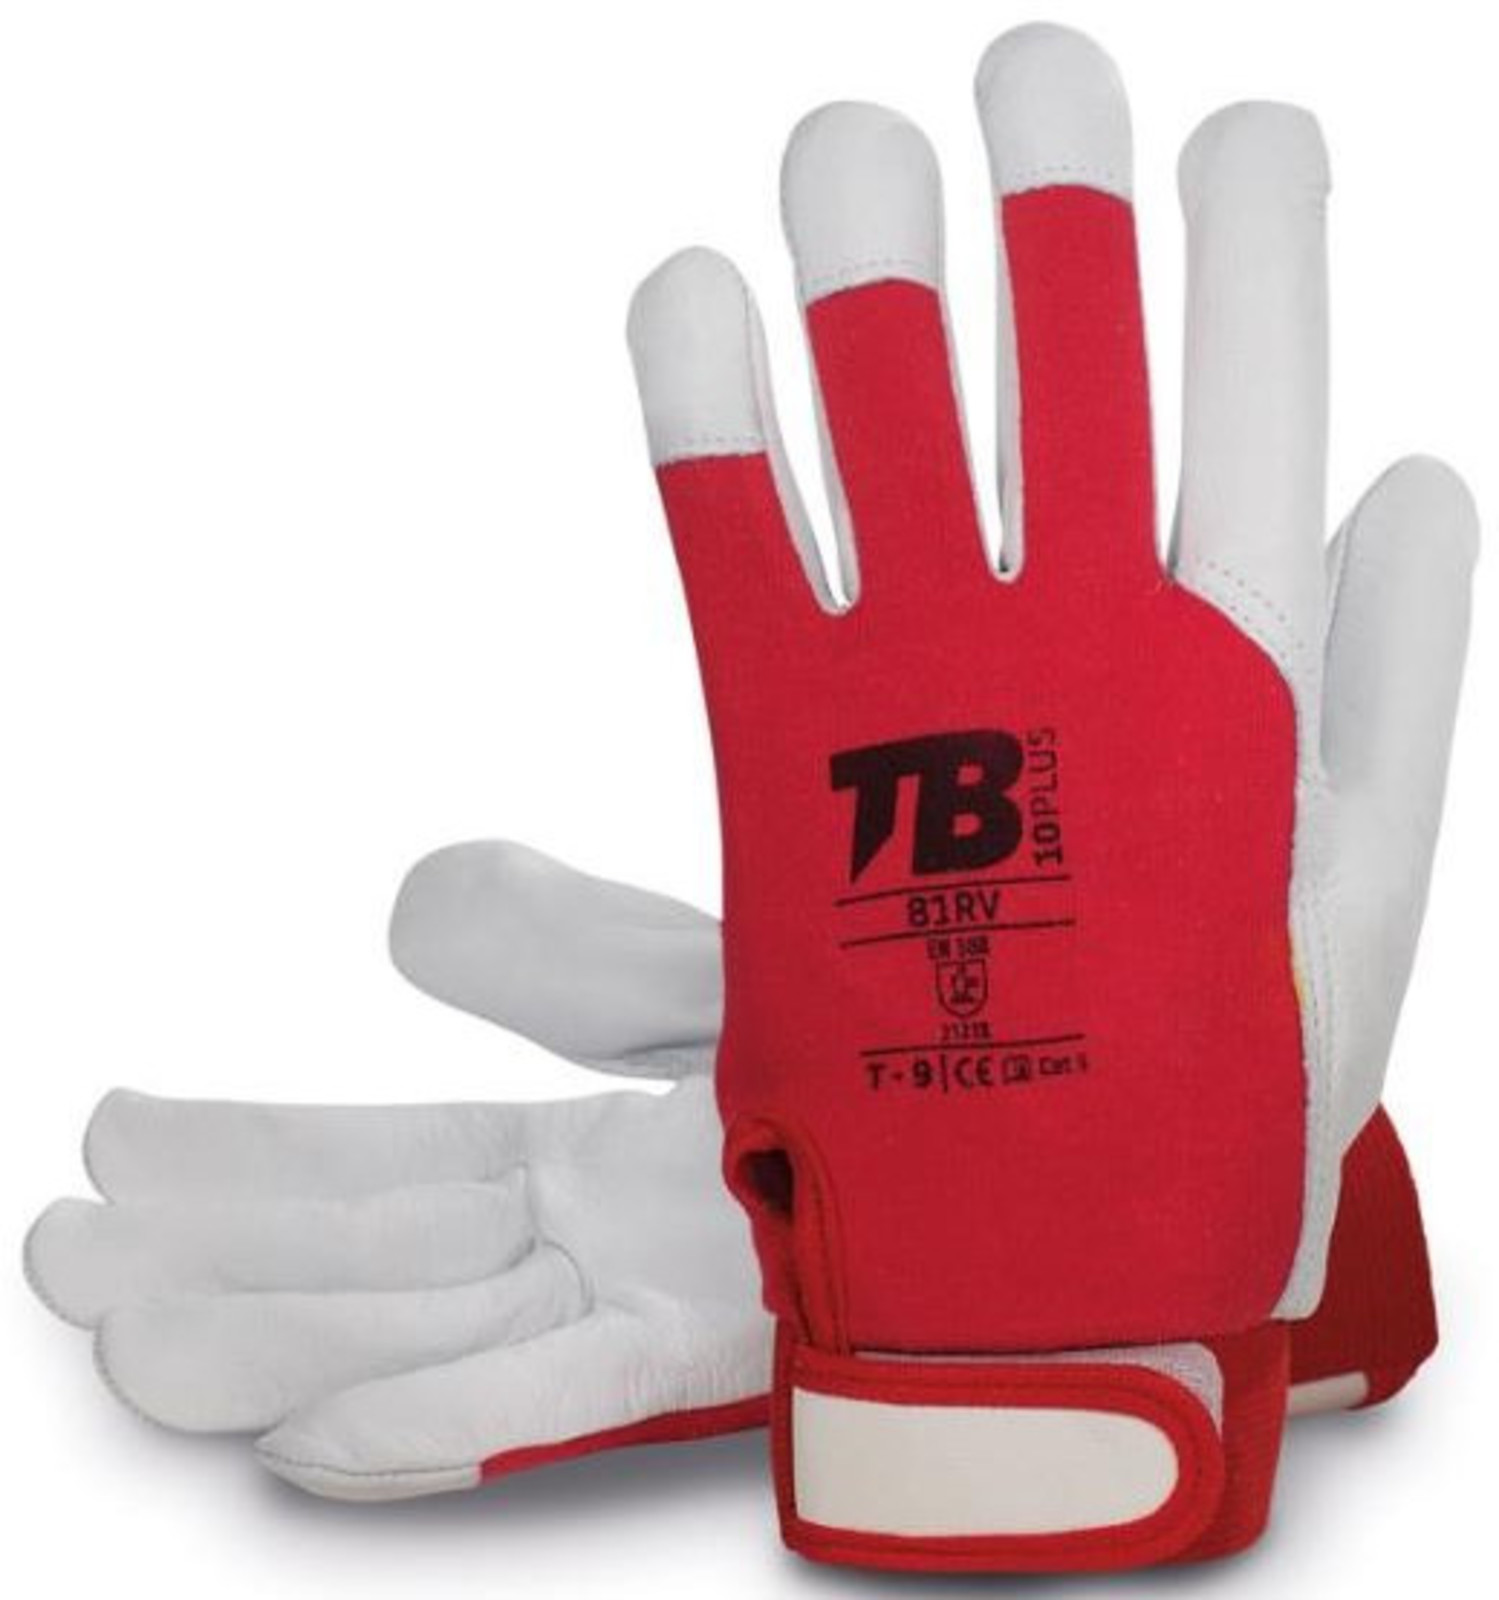 Pracovné rukavice TB 81RV kombinované - veľkosť: 9/L